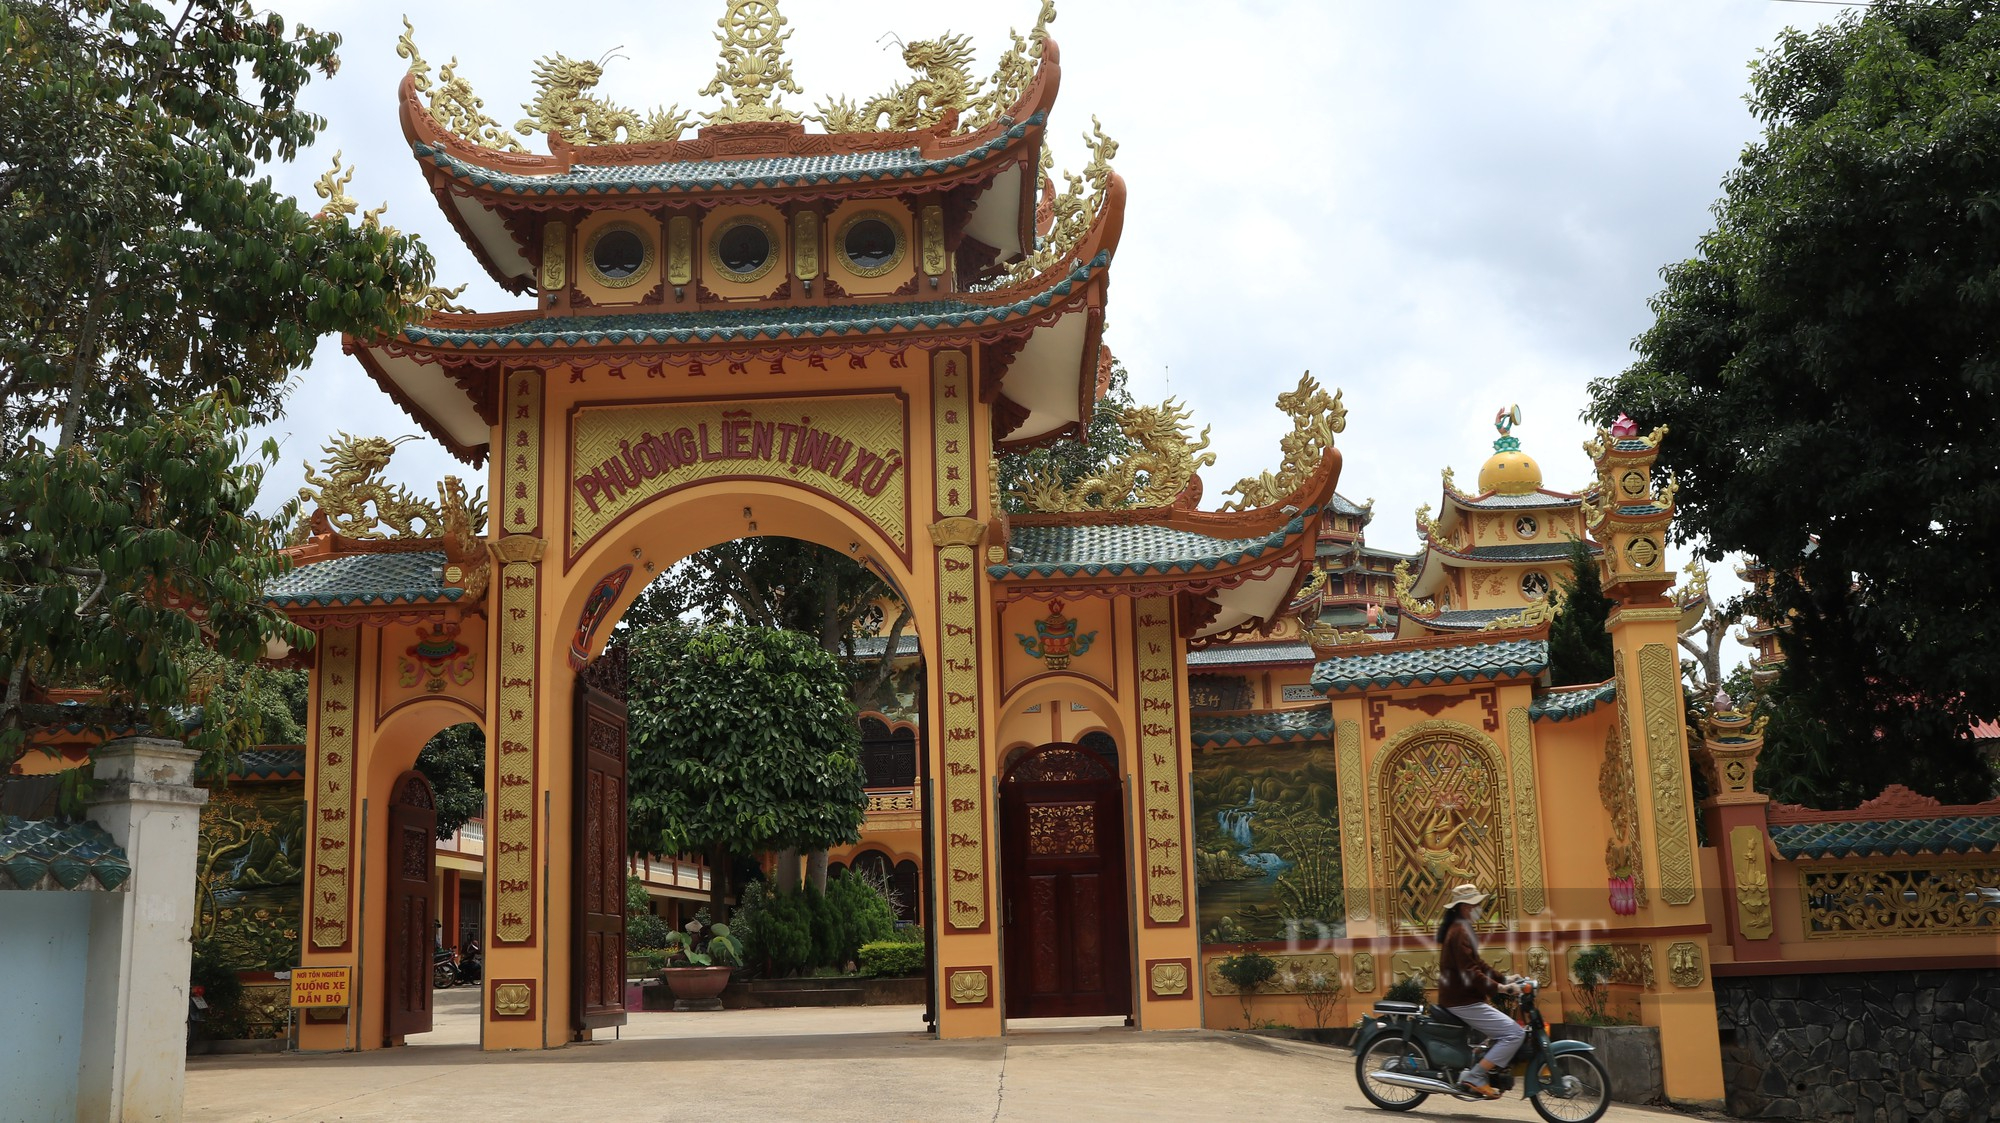 Làng nhiều chùa nhất Việt Nam ở Lâm Đồng (bài 2): Sống “tốt đời đẹp đạo” theo giáo lý của đạo Phật - Ảnh 4.